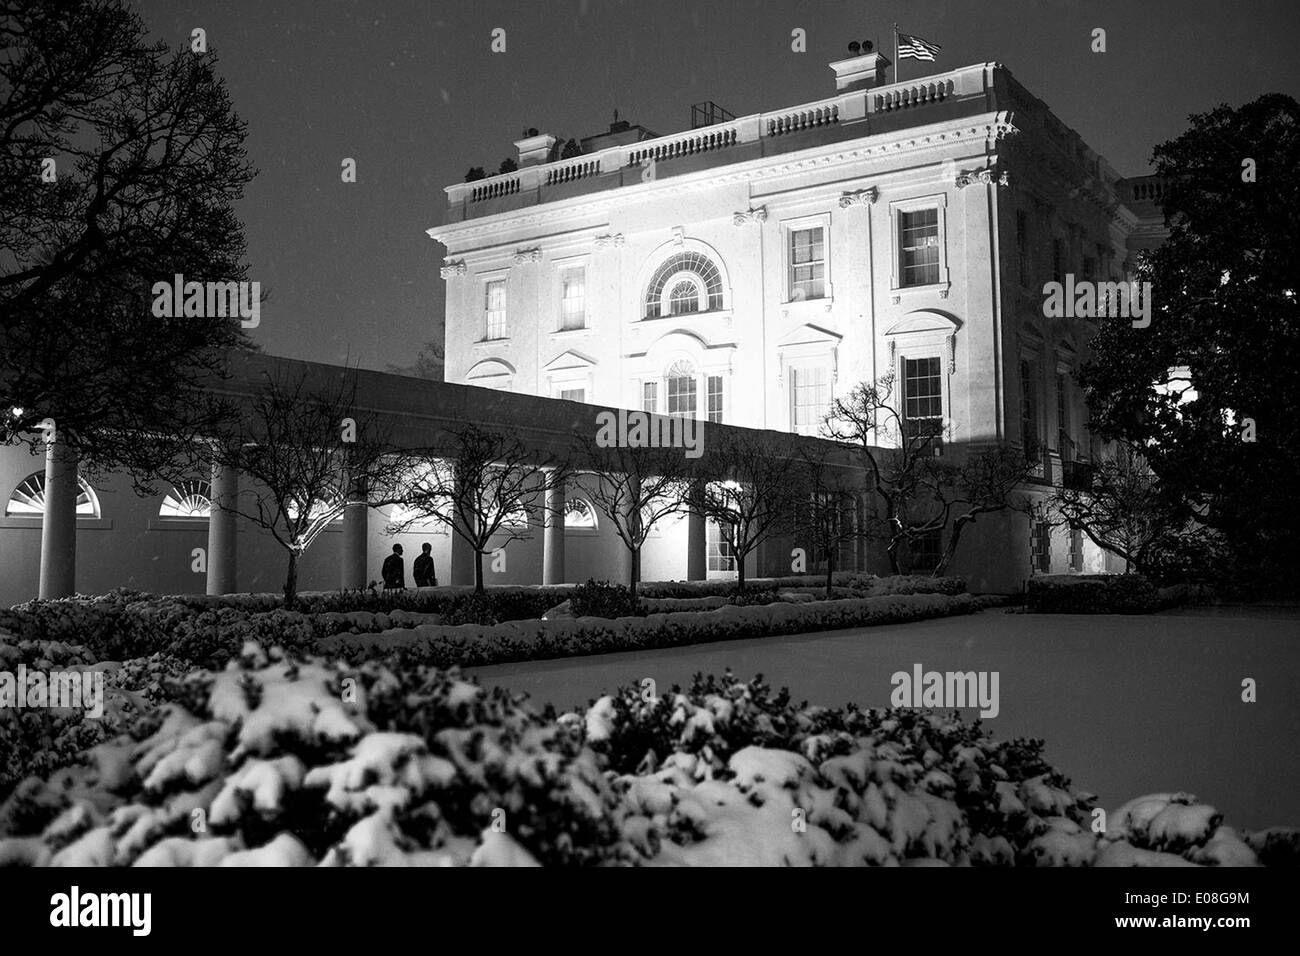 Il Presidente Usa Barack Obama passeggiate al residence con il capo del personale Denis McDonough dopo una giornata di riunioni nell'ala ovest della casa bianca su una notte nevosa Gennaio 21, 2014 a Washington, DC. Foto Stock